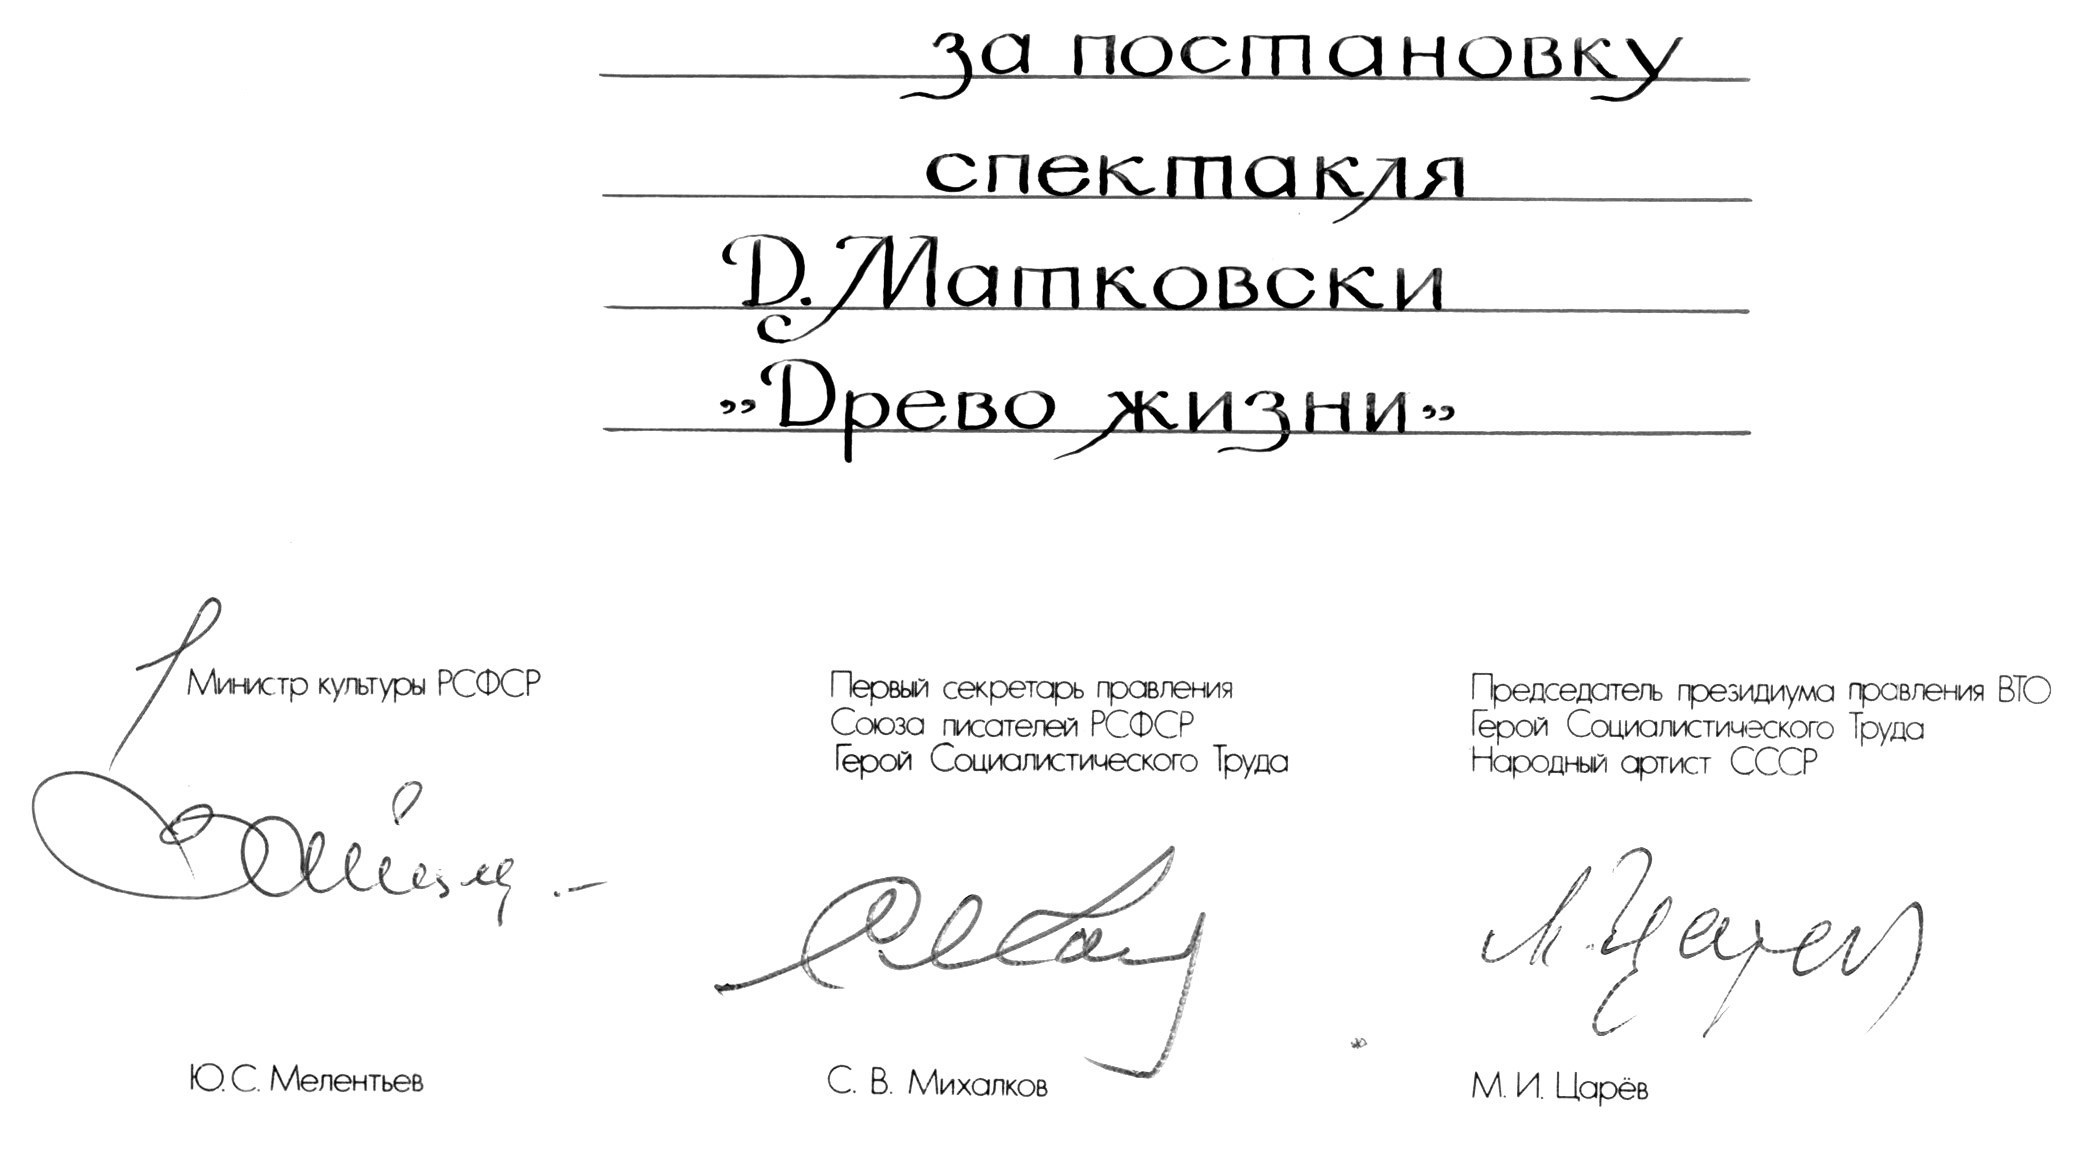 Автографы Ю.С. Мелентьева, С.В. Михалкова, М.И. Царёва под дипломами